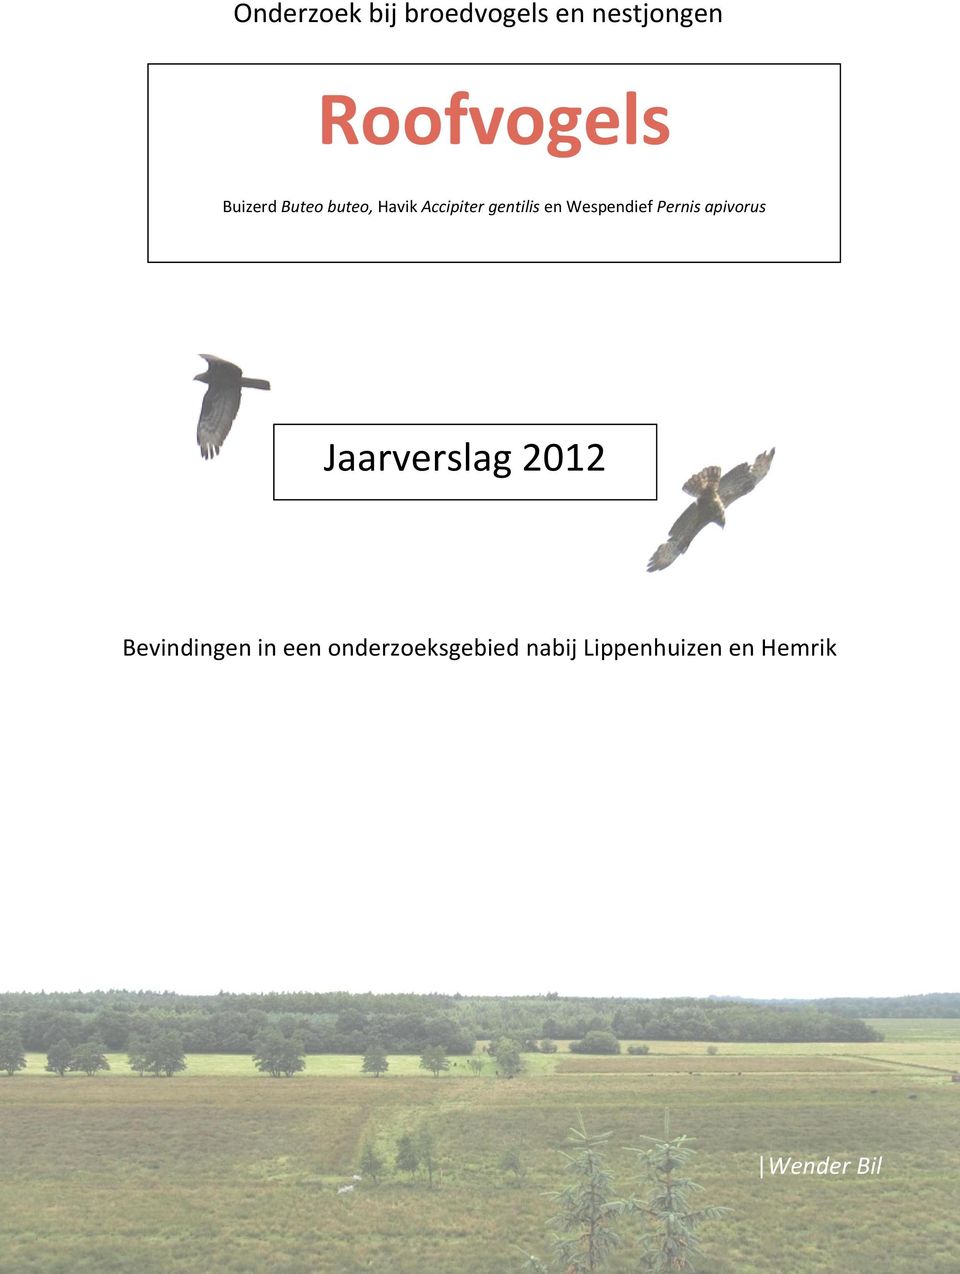 Wespendief Pernis apivorus Jaarverslag 2012